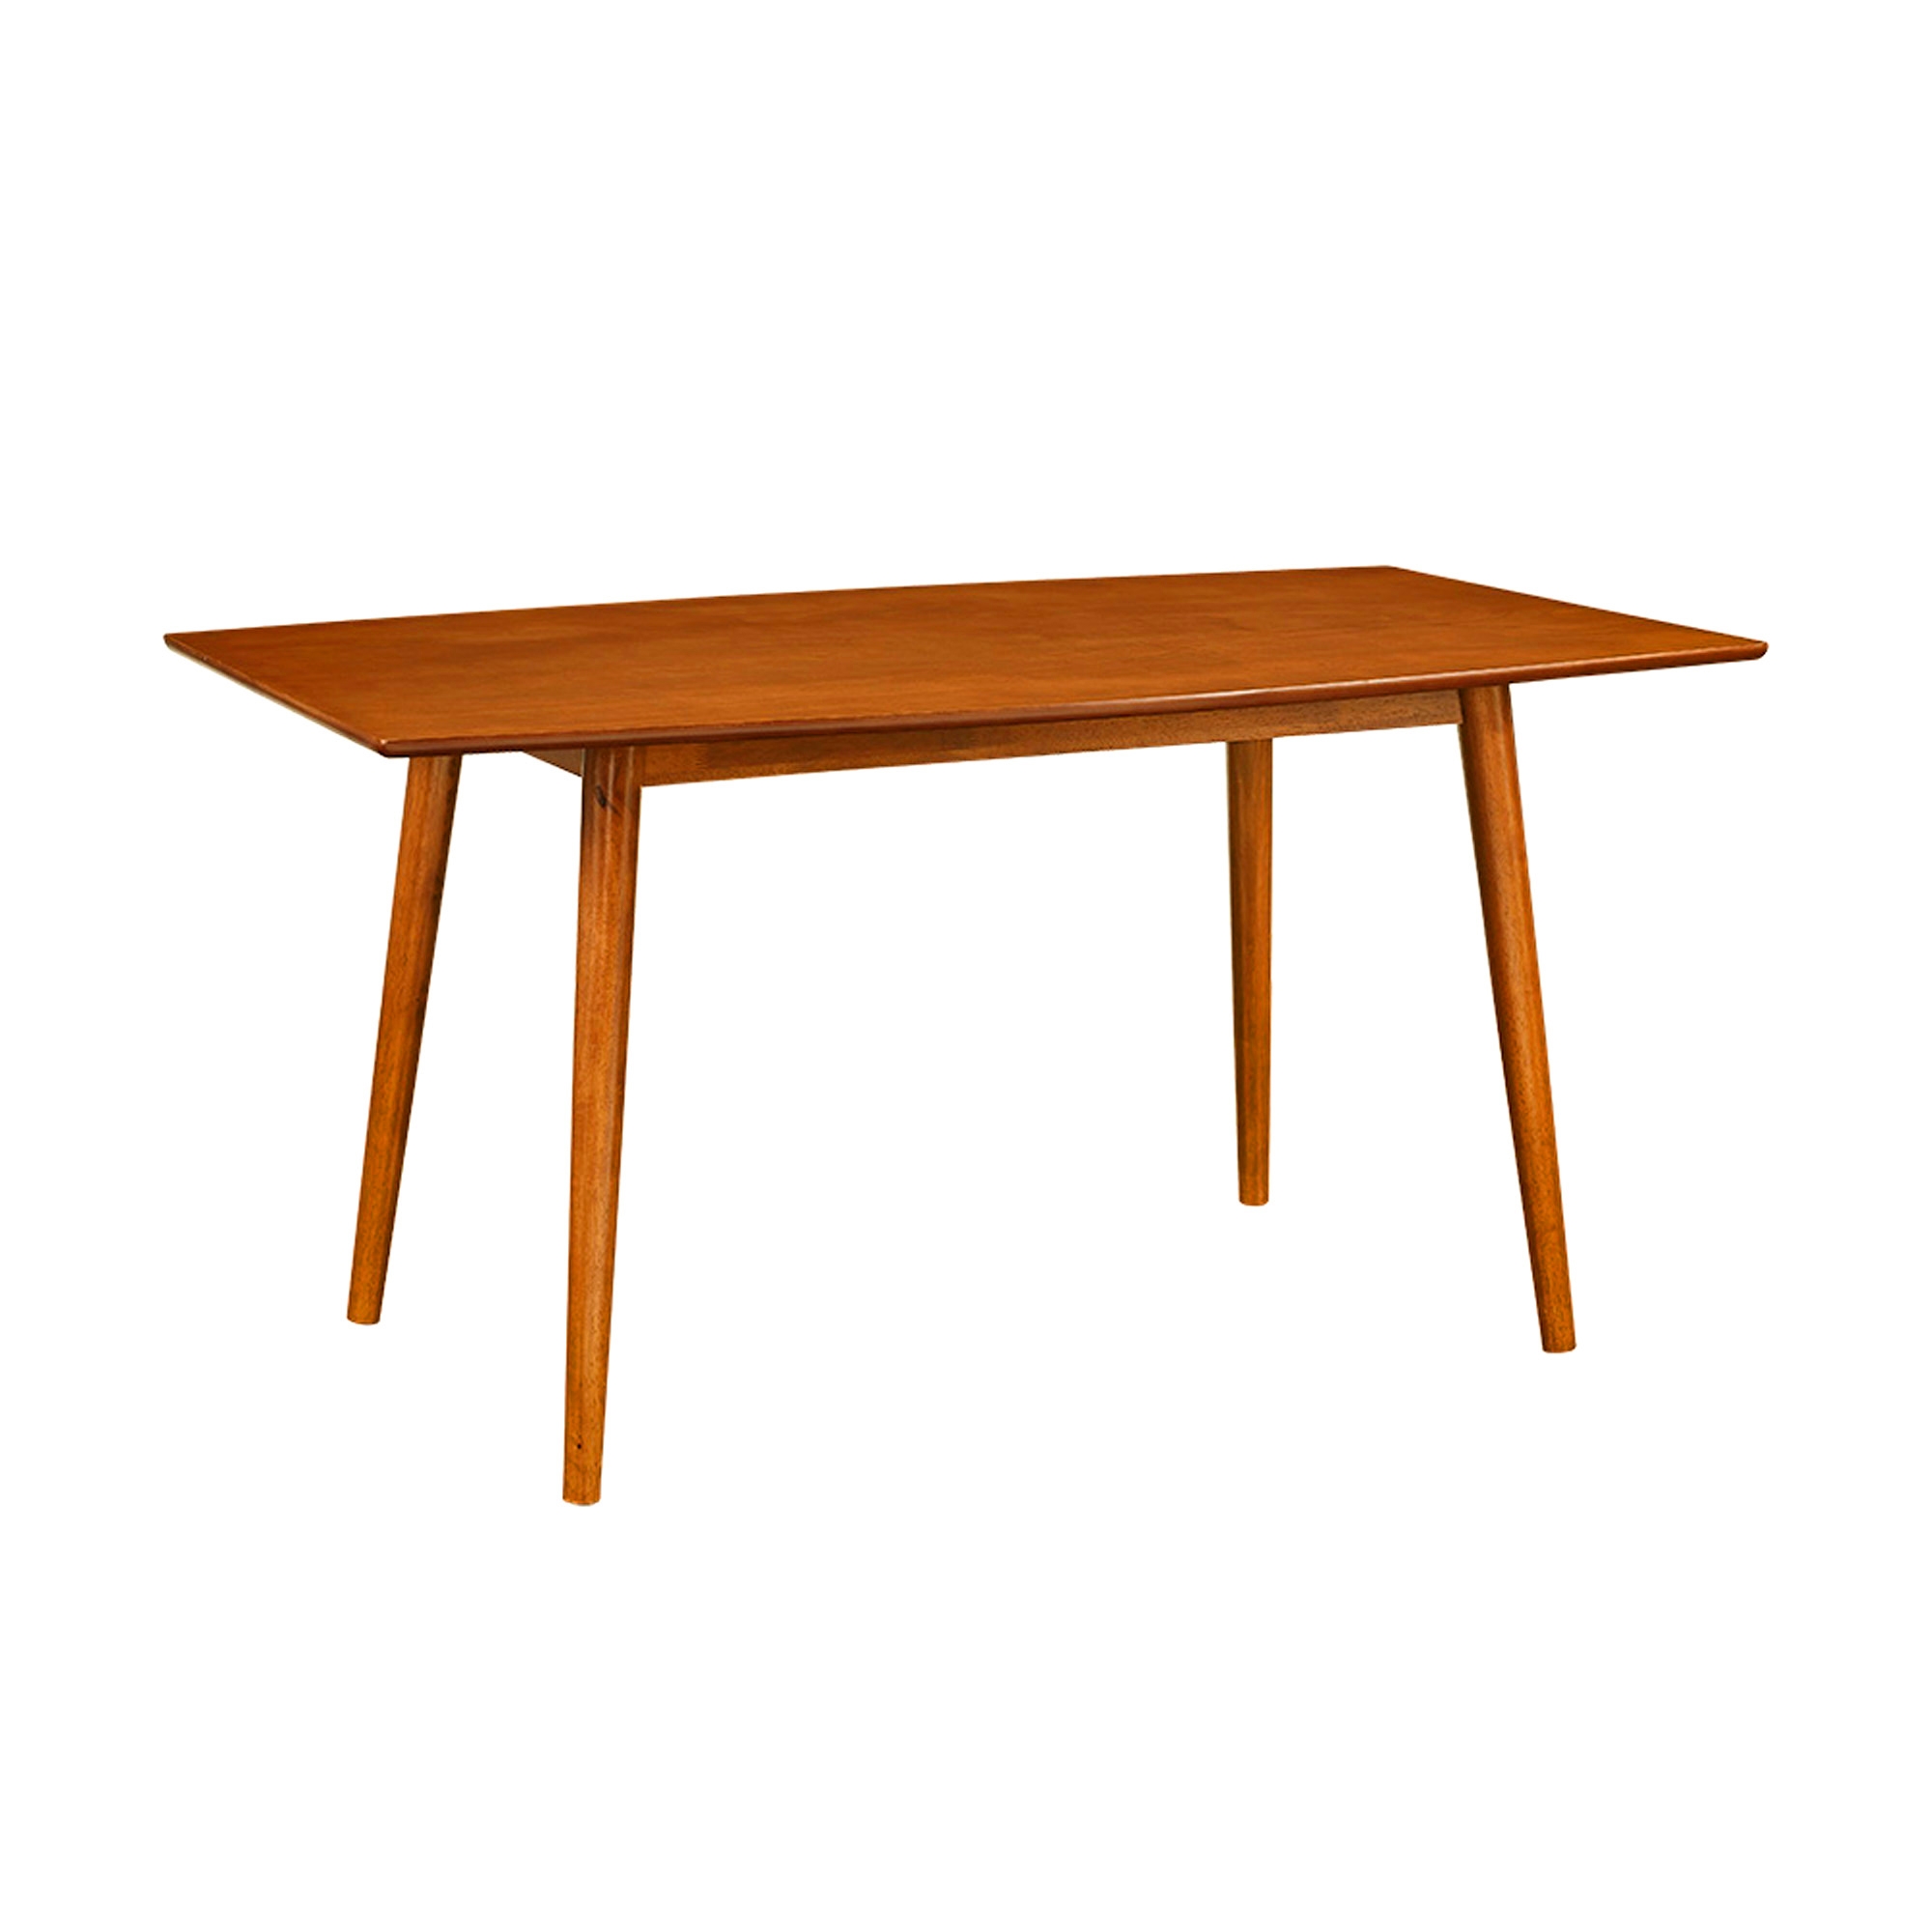 60" Mid Century Wood Dining Table - Acorn - Image 1